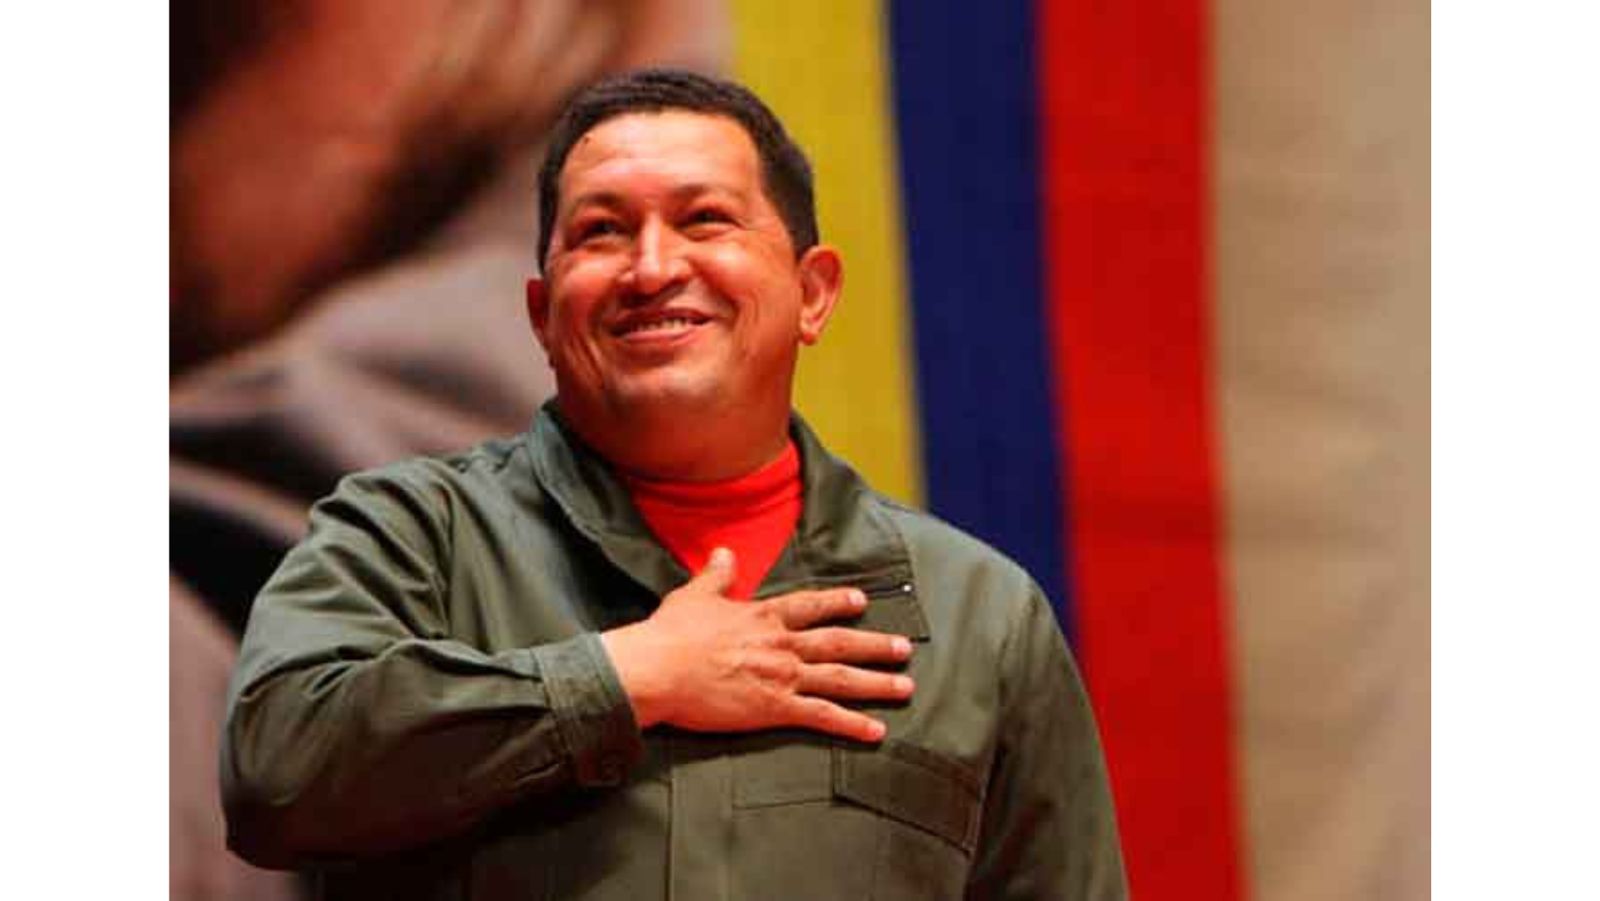 Aquí está Chávez en la energía juvenil Nuestramericana